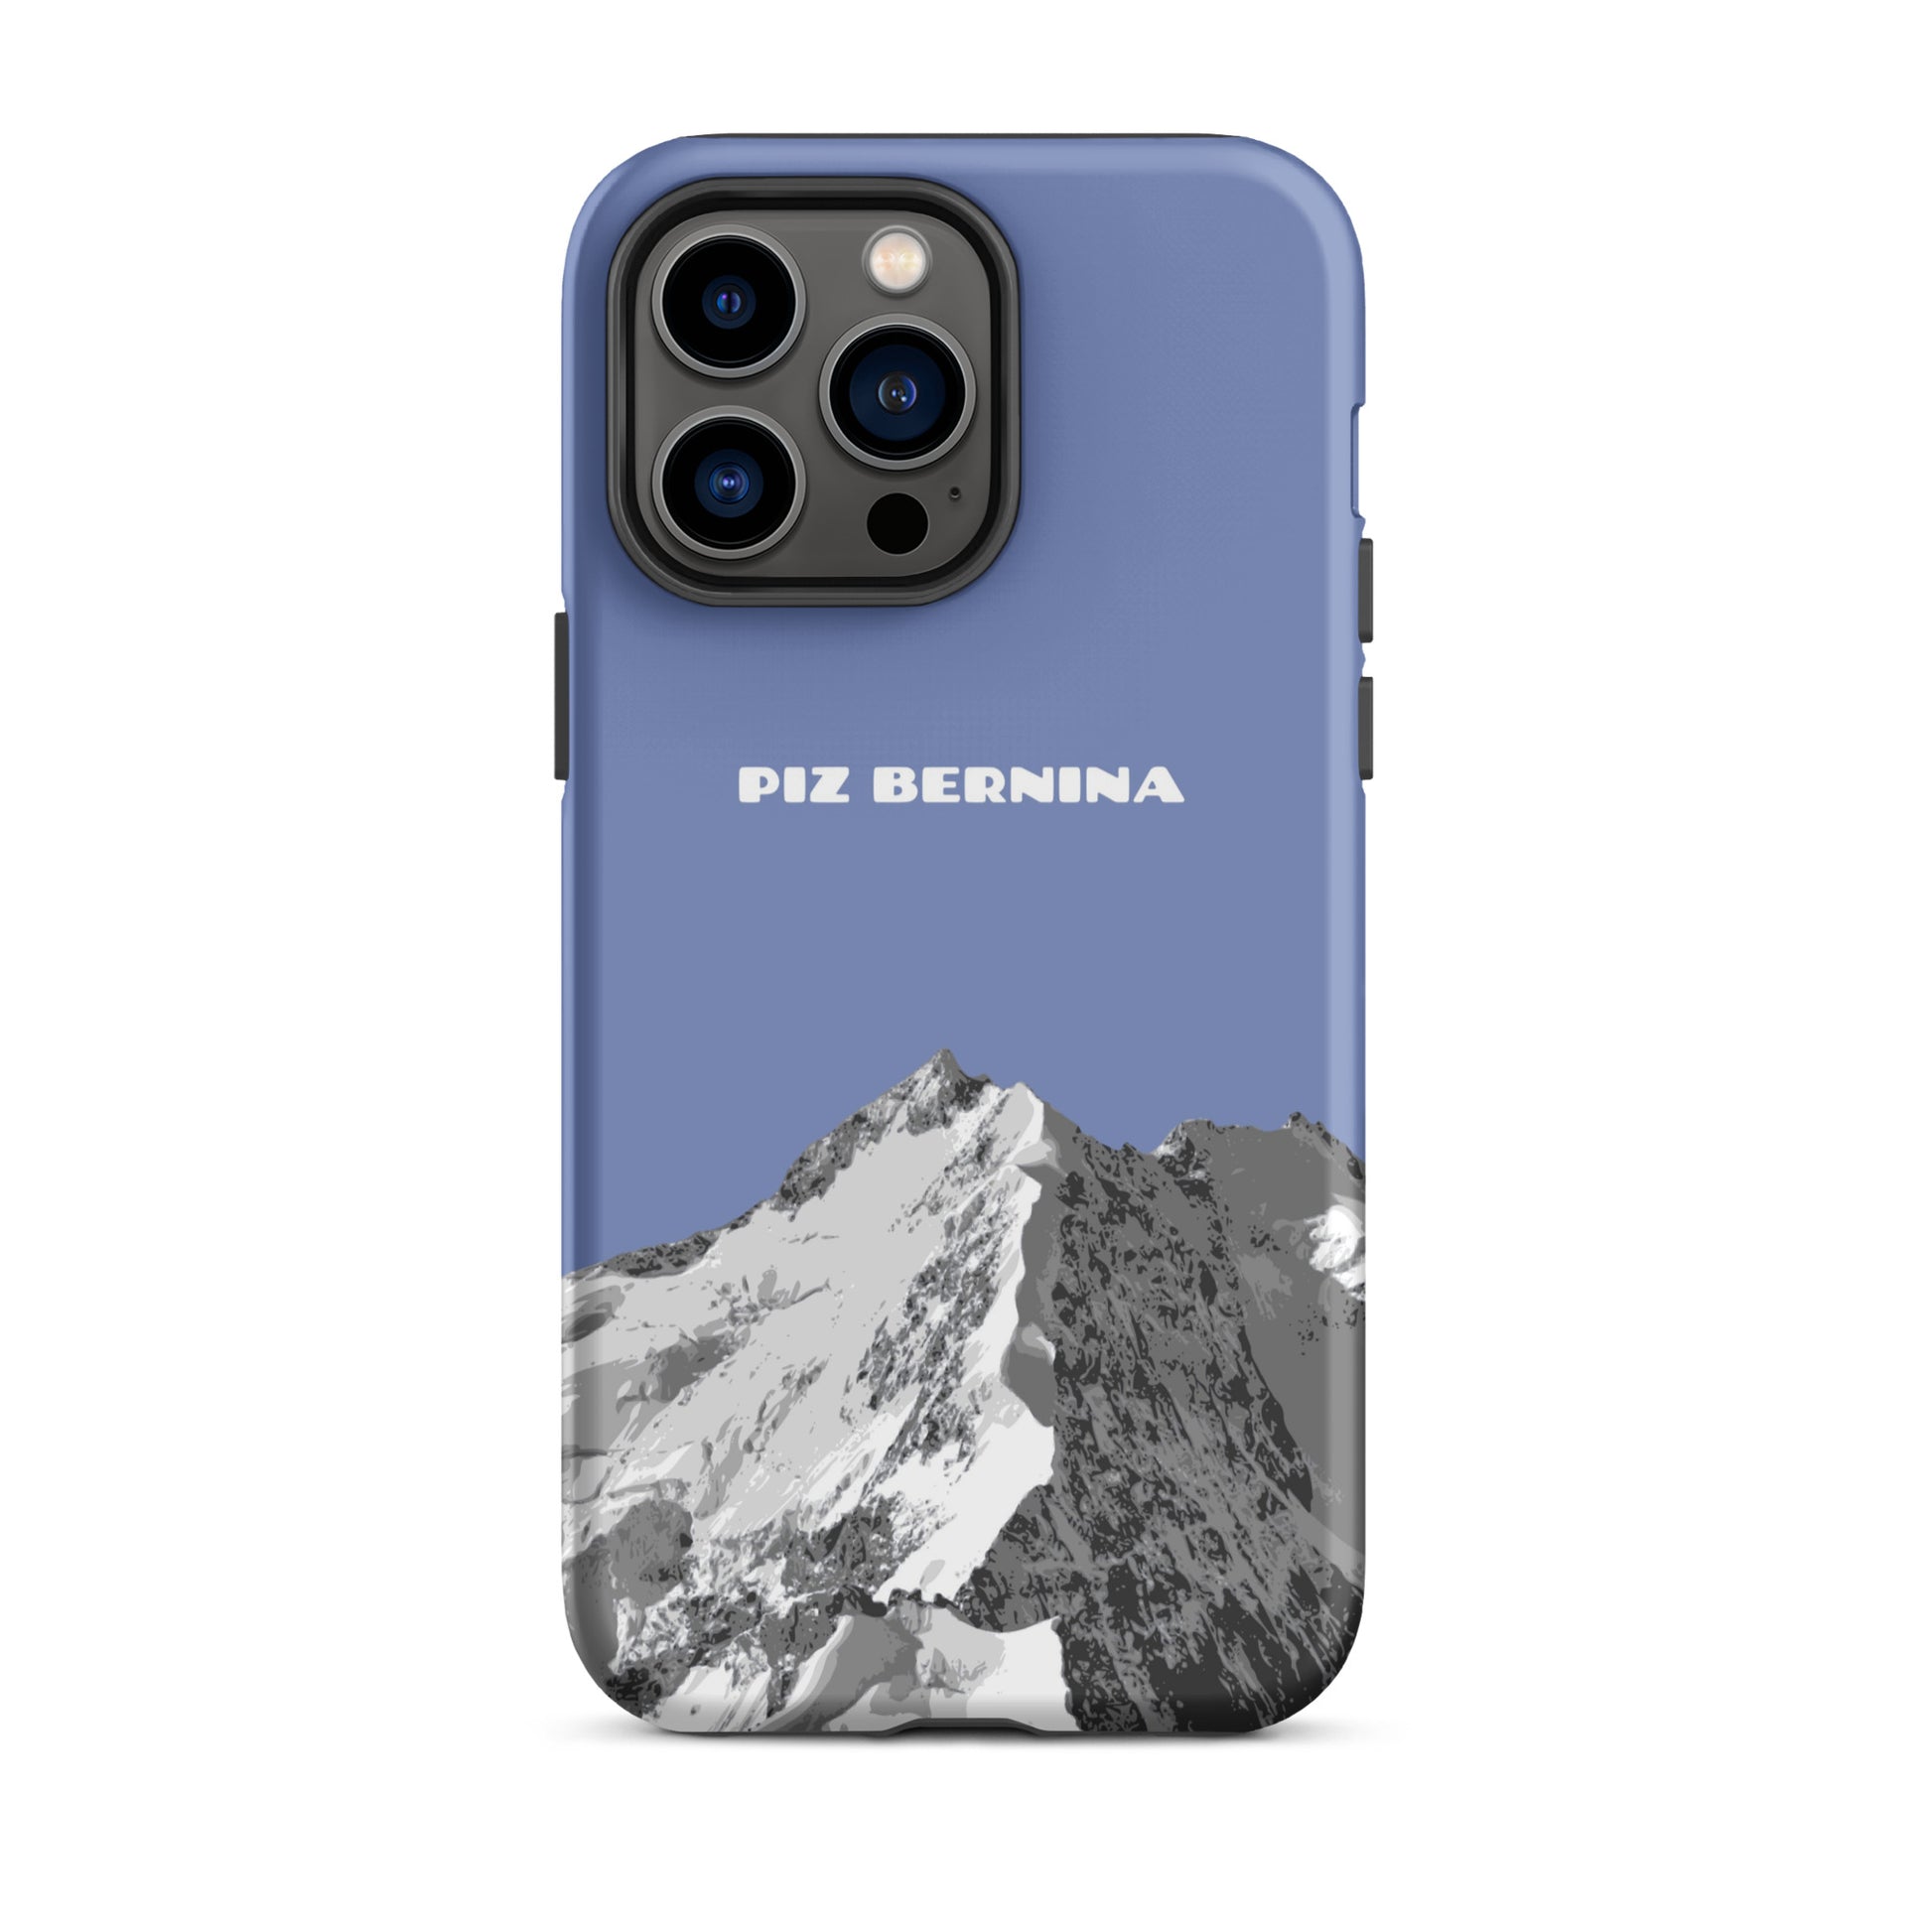 Hülle für das iPhone 14 Pro Max von Apple in der Farbe Pastellblau, dass den Piz Bernina in Graubünden zeigt.